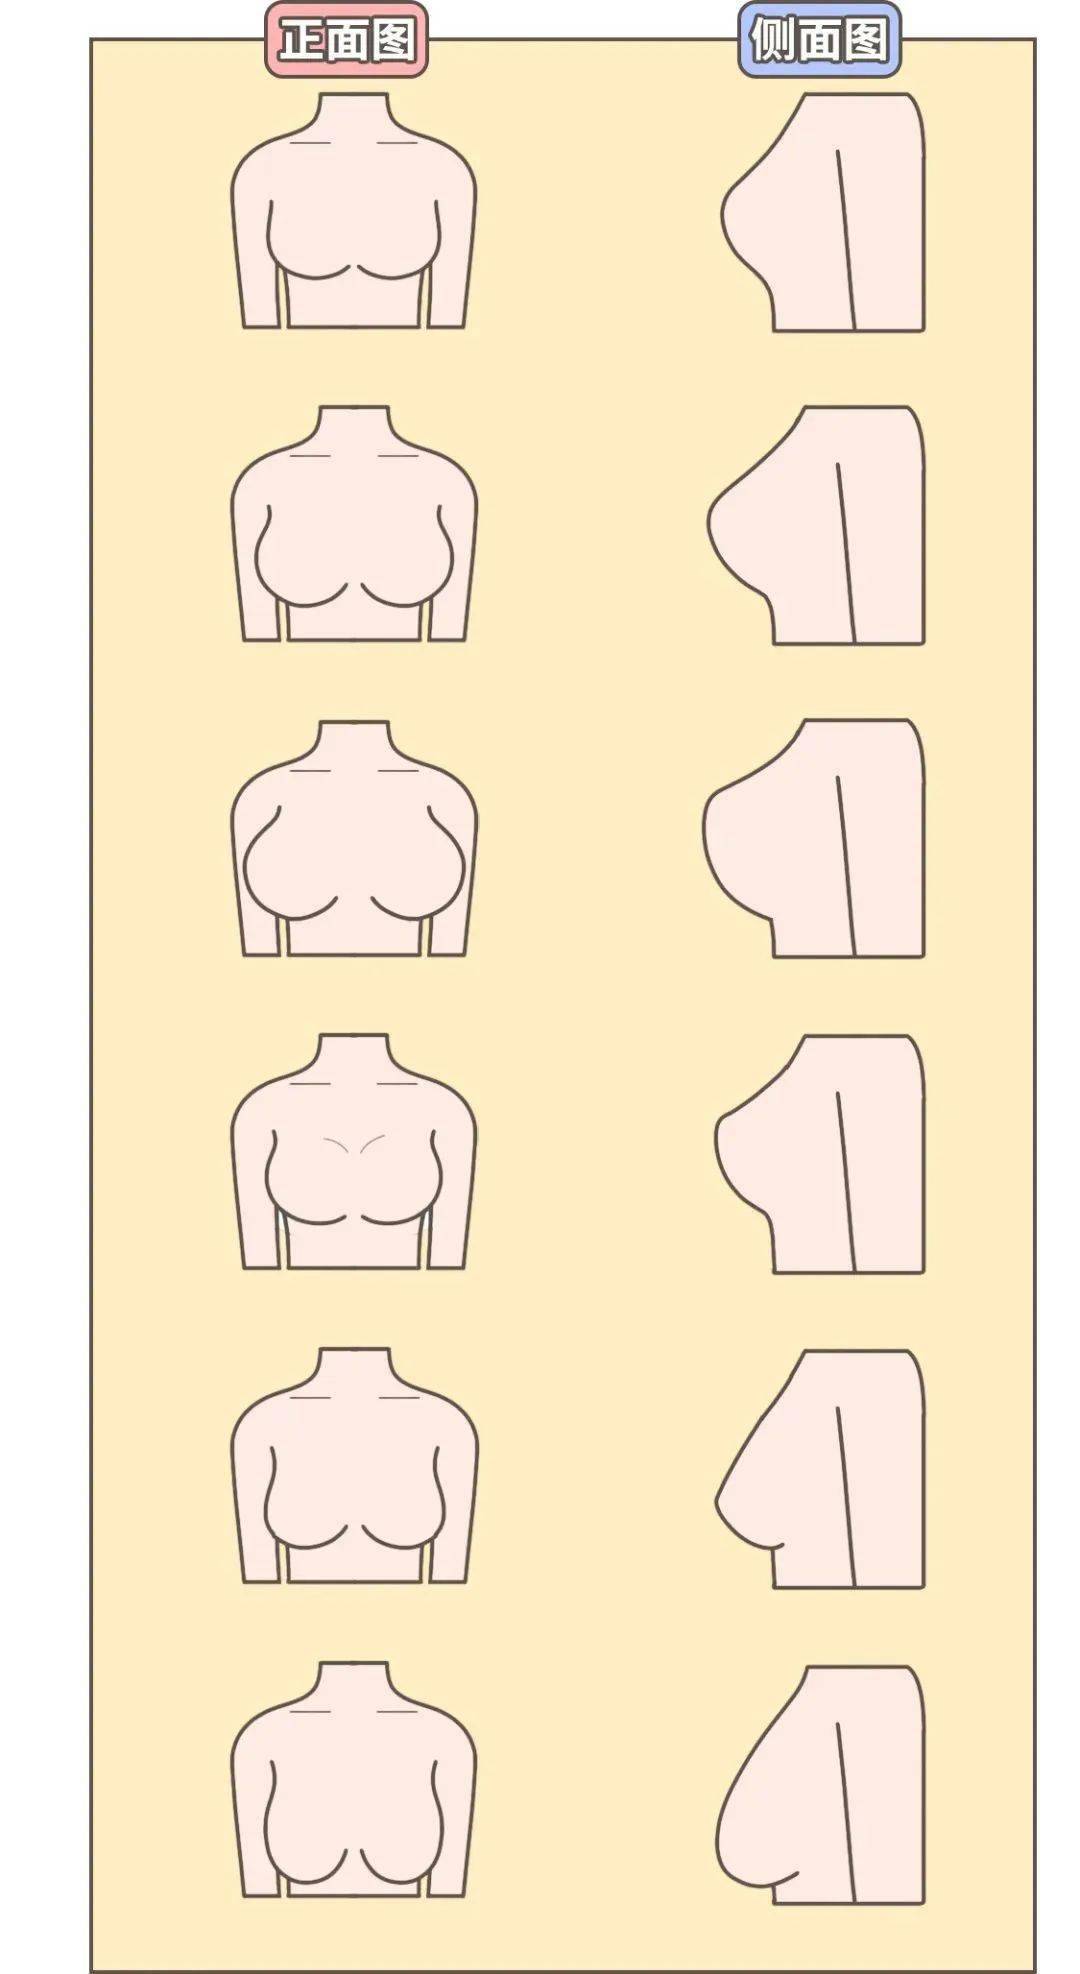 乳房正常形态女性图片